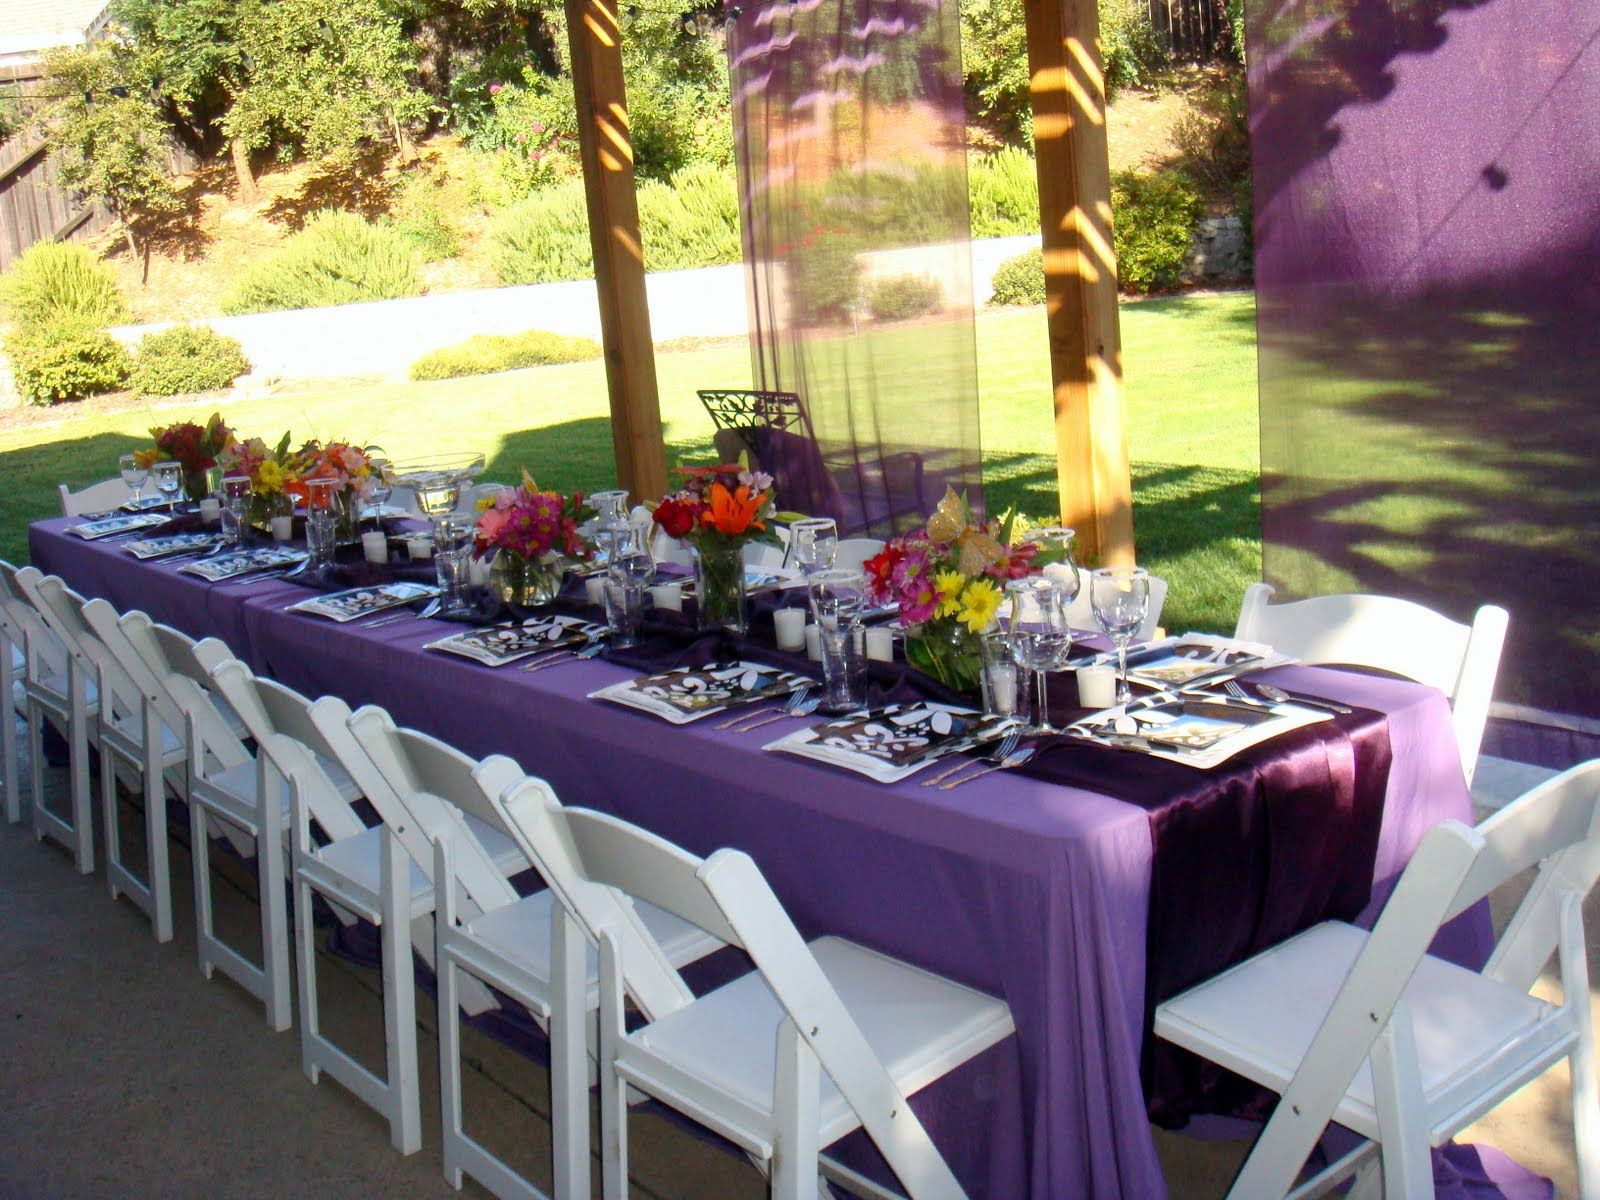 Outdoor High School Graduation Party Ideas
 tablescapes for outdoor graduation party